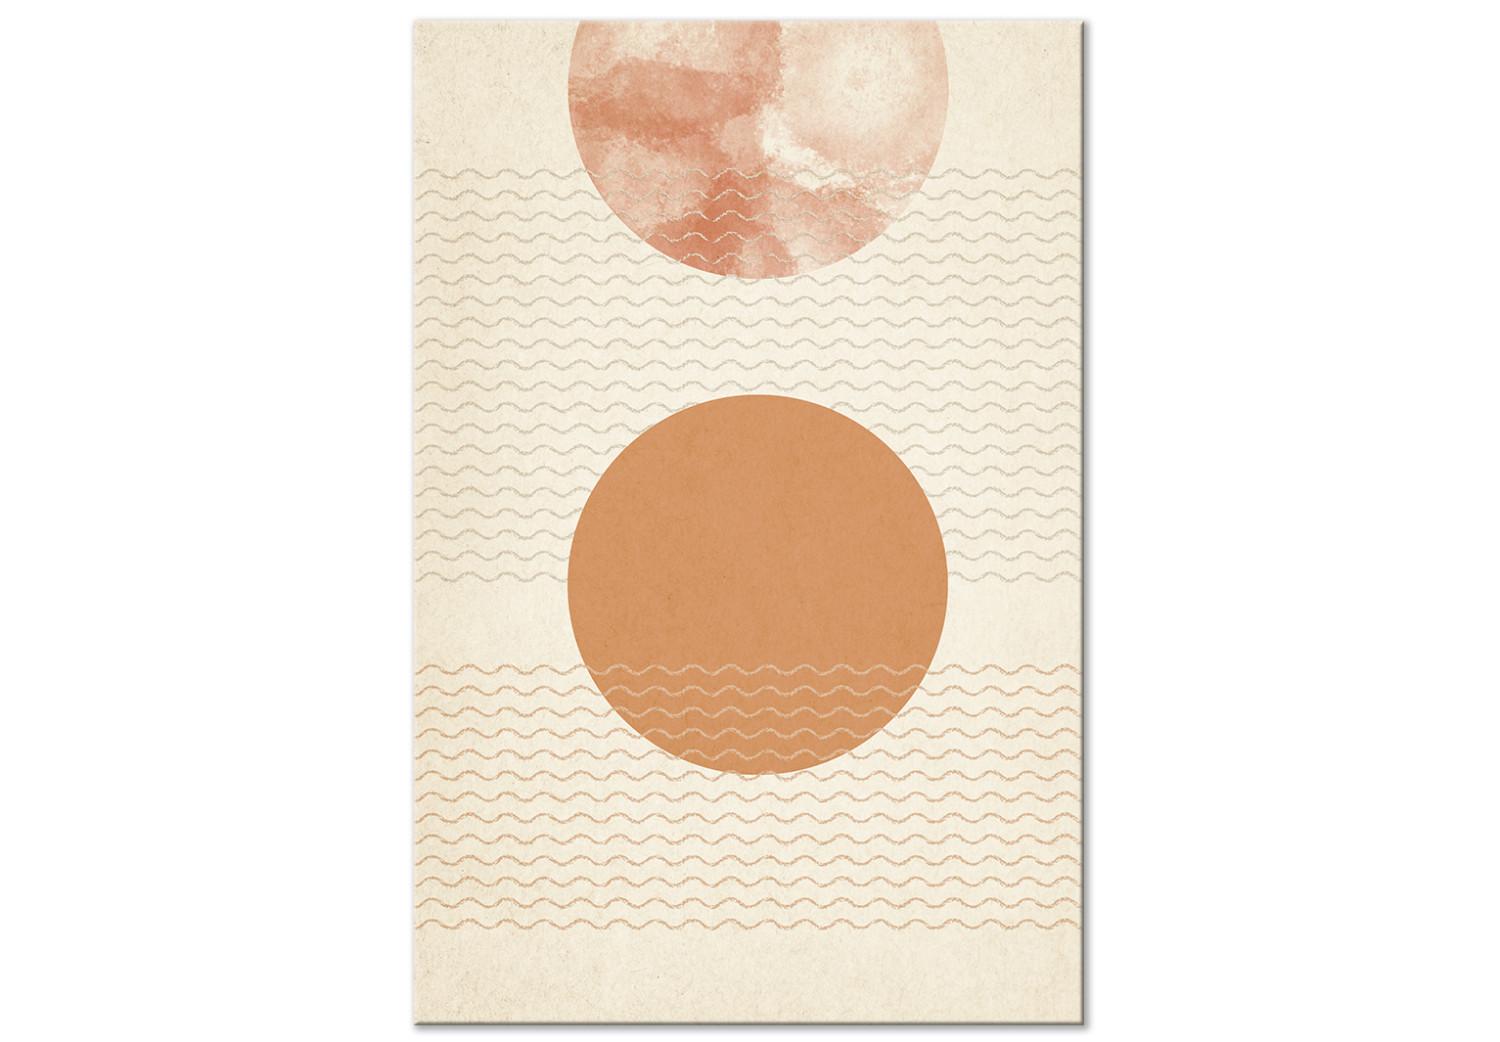 Cuadro Sol naranja - abstracto en patrones geométricos, estilo japonés